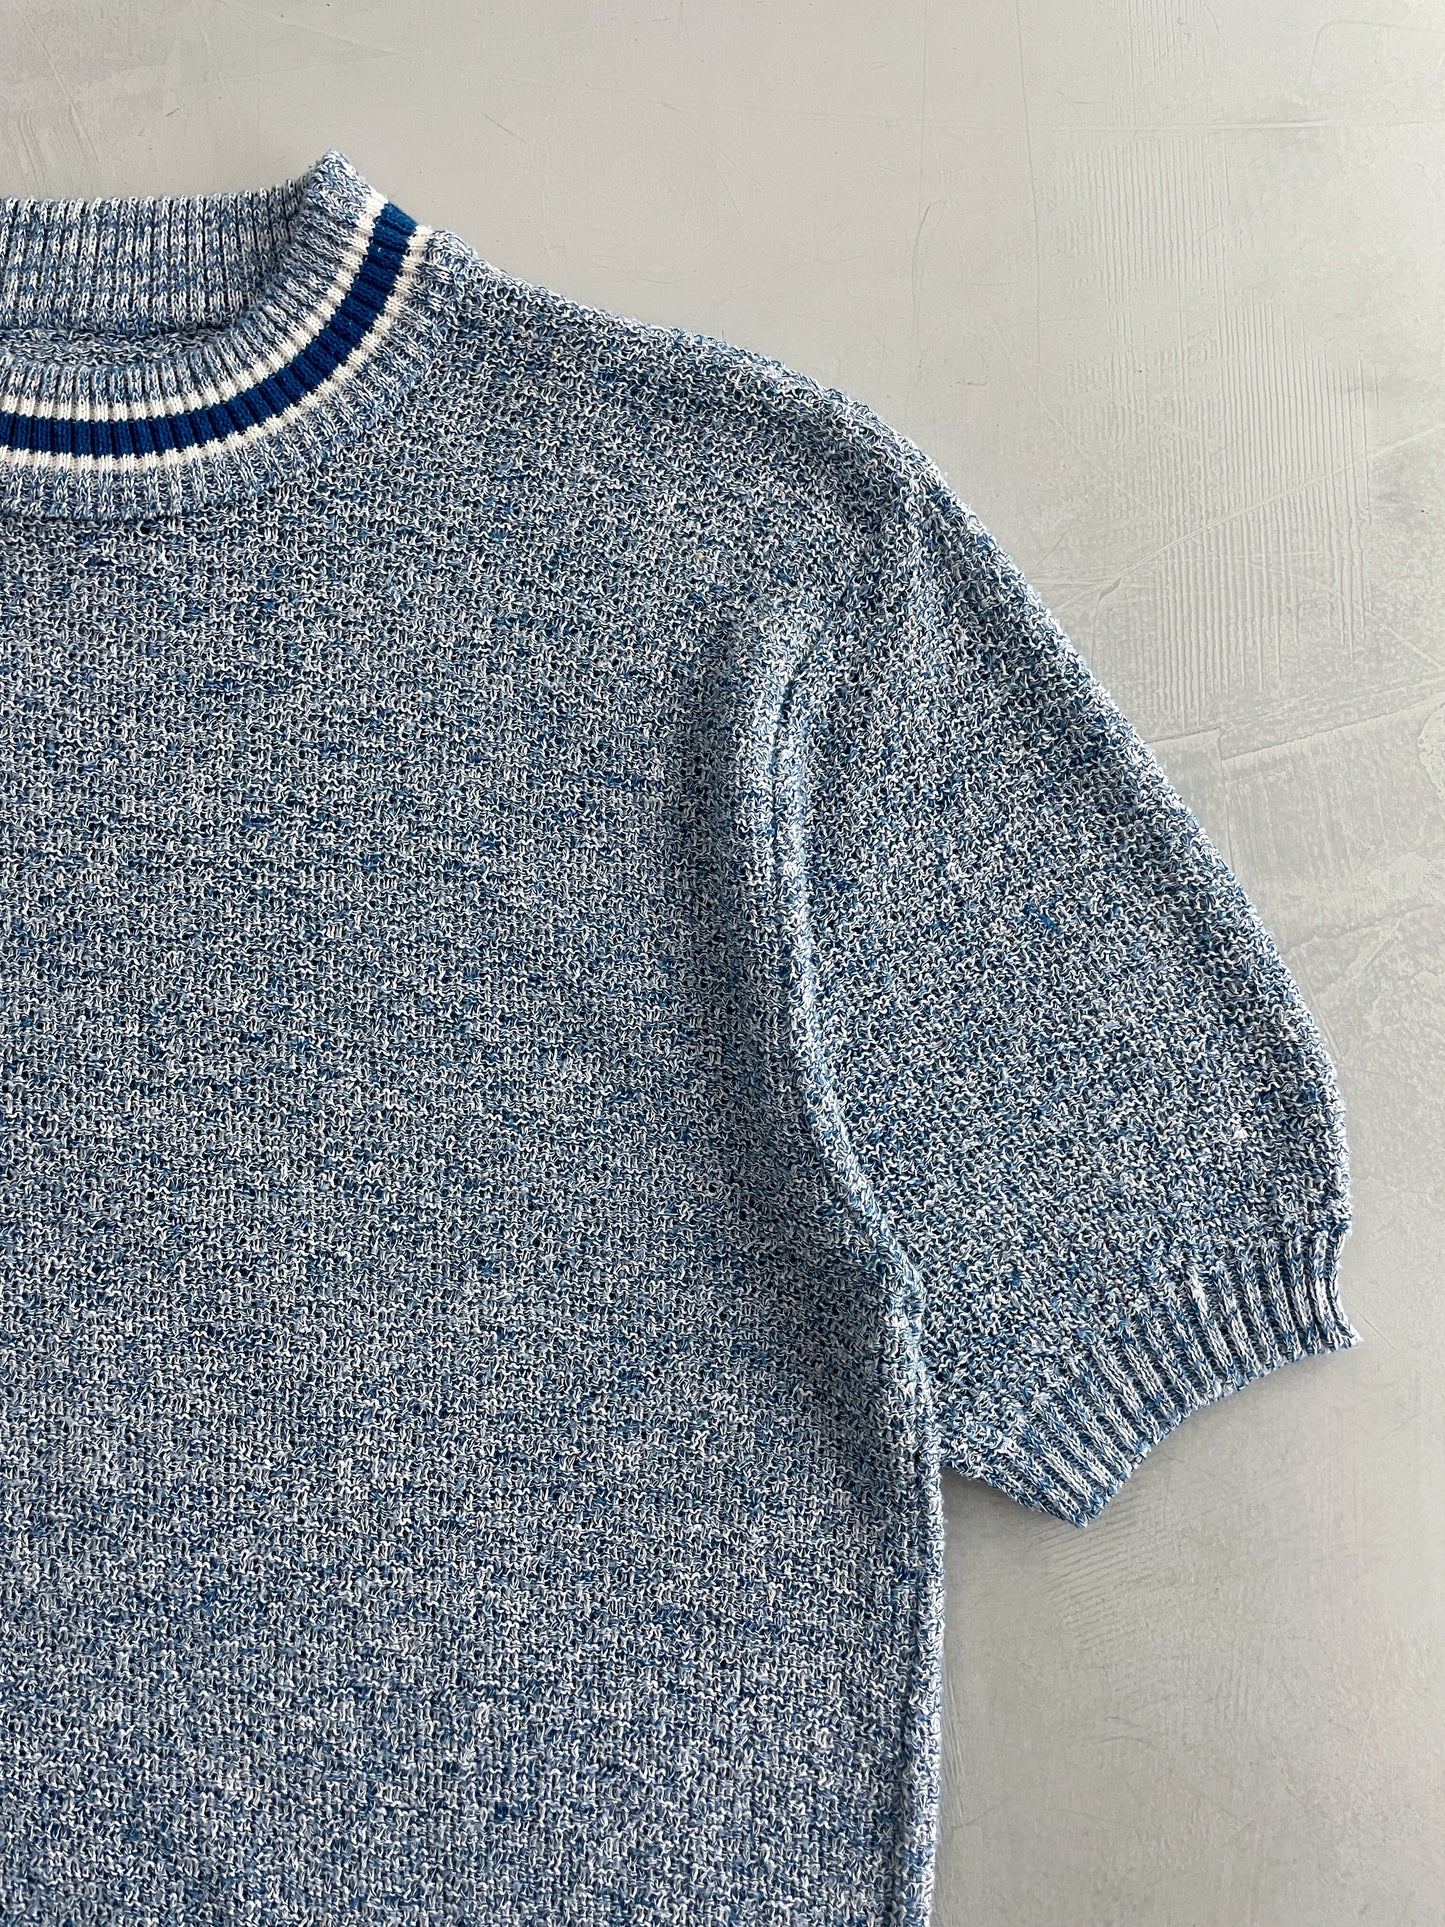 60's Van Dyke Knitted Shirt [L]